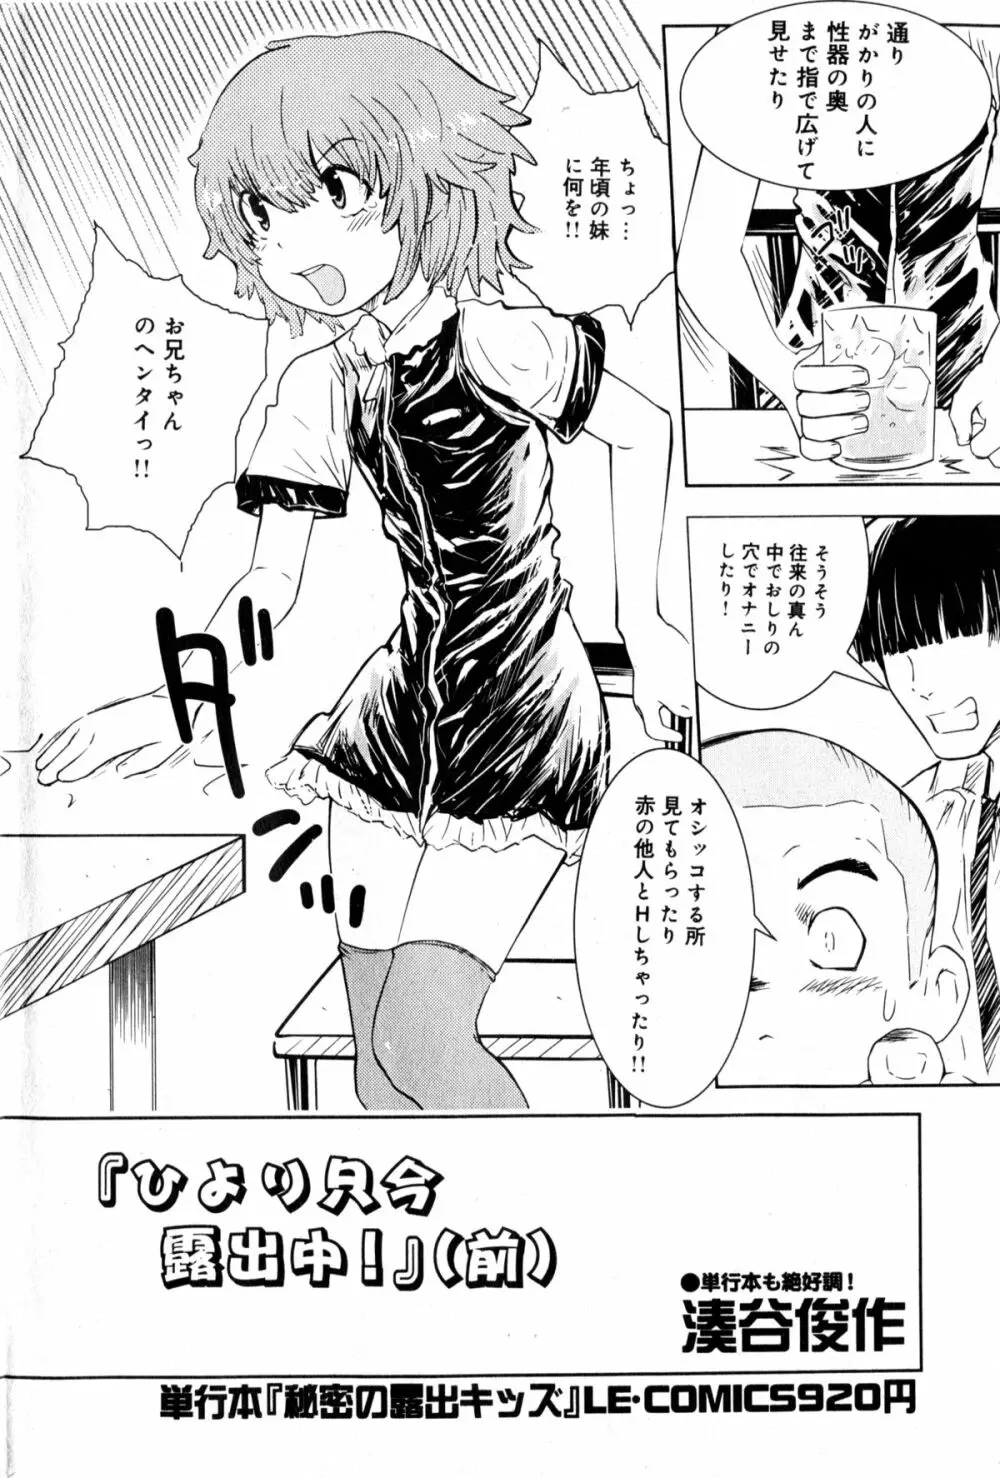 Hiyori Tadaima Roshutsu Naka [Hiyori's coming home a streaker] 1-2 (JAP) Page.3